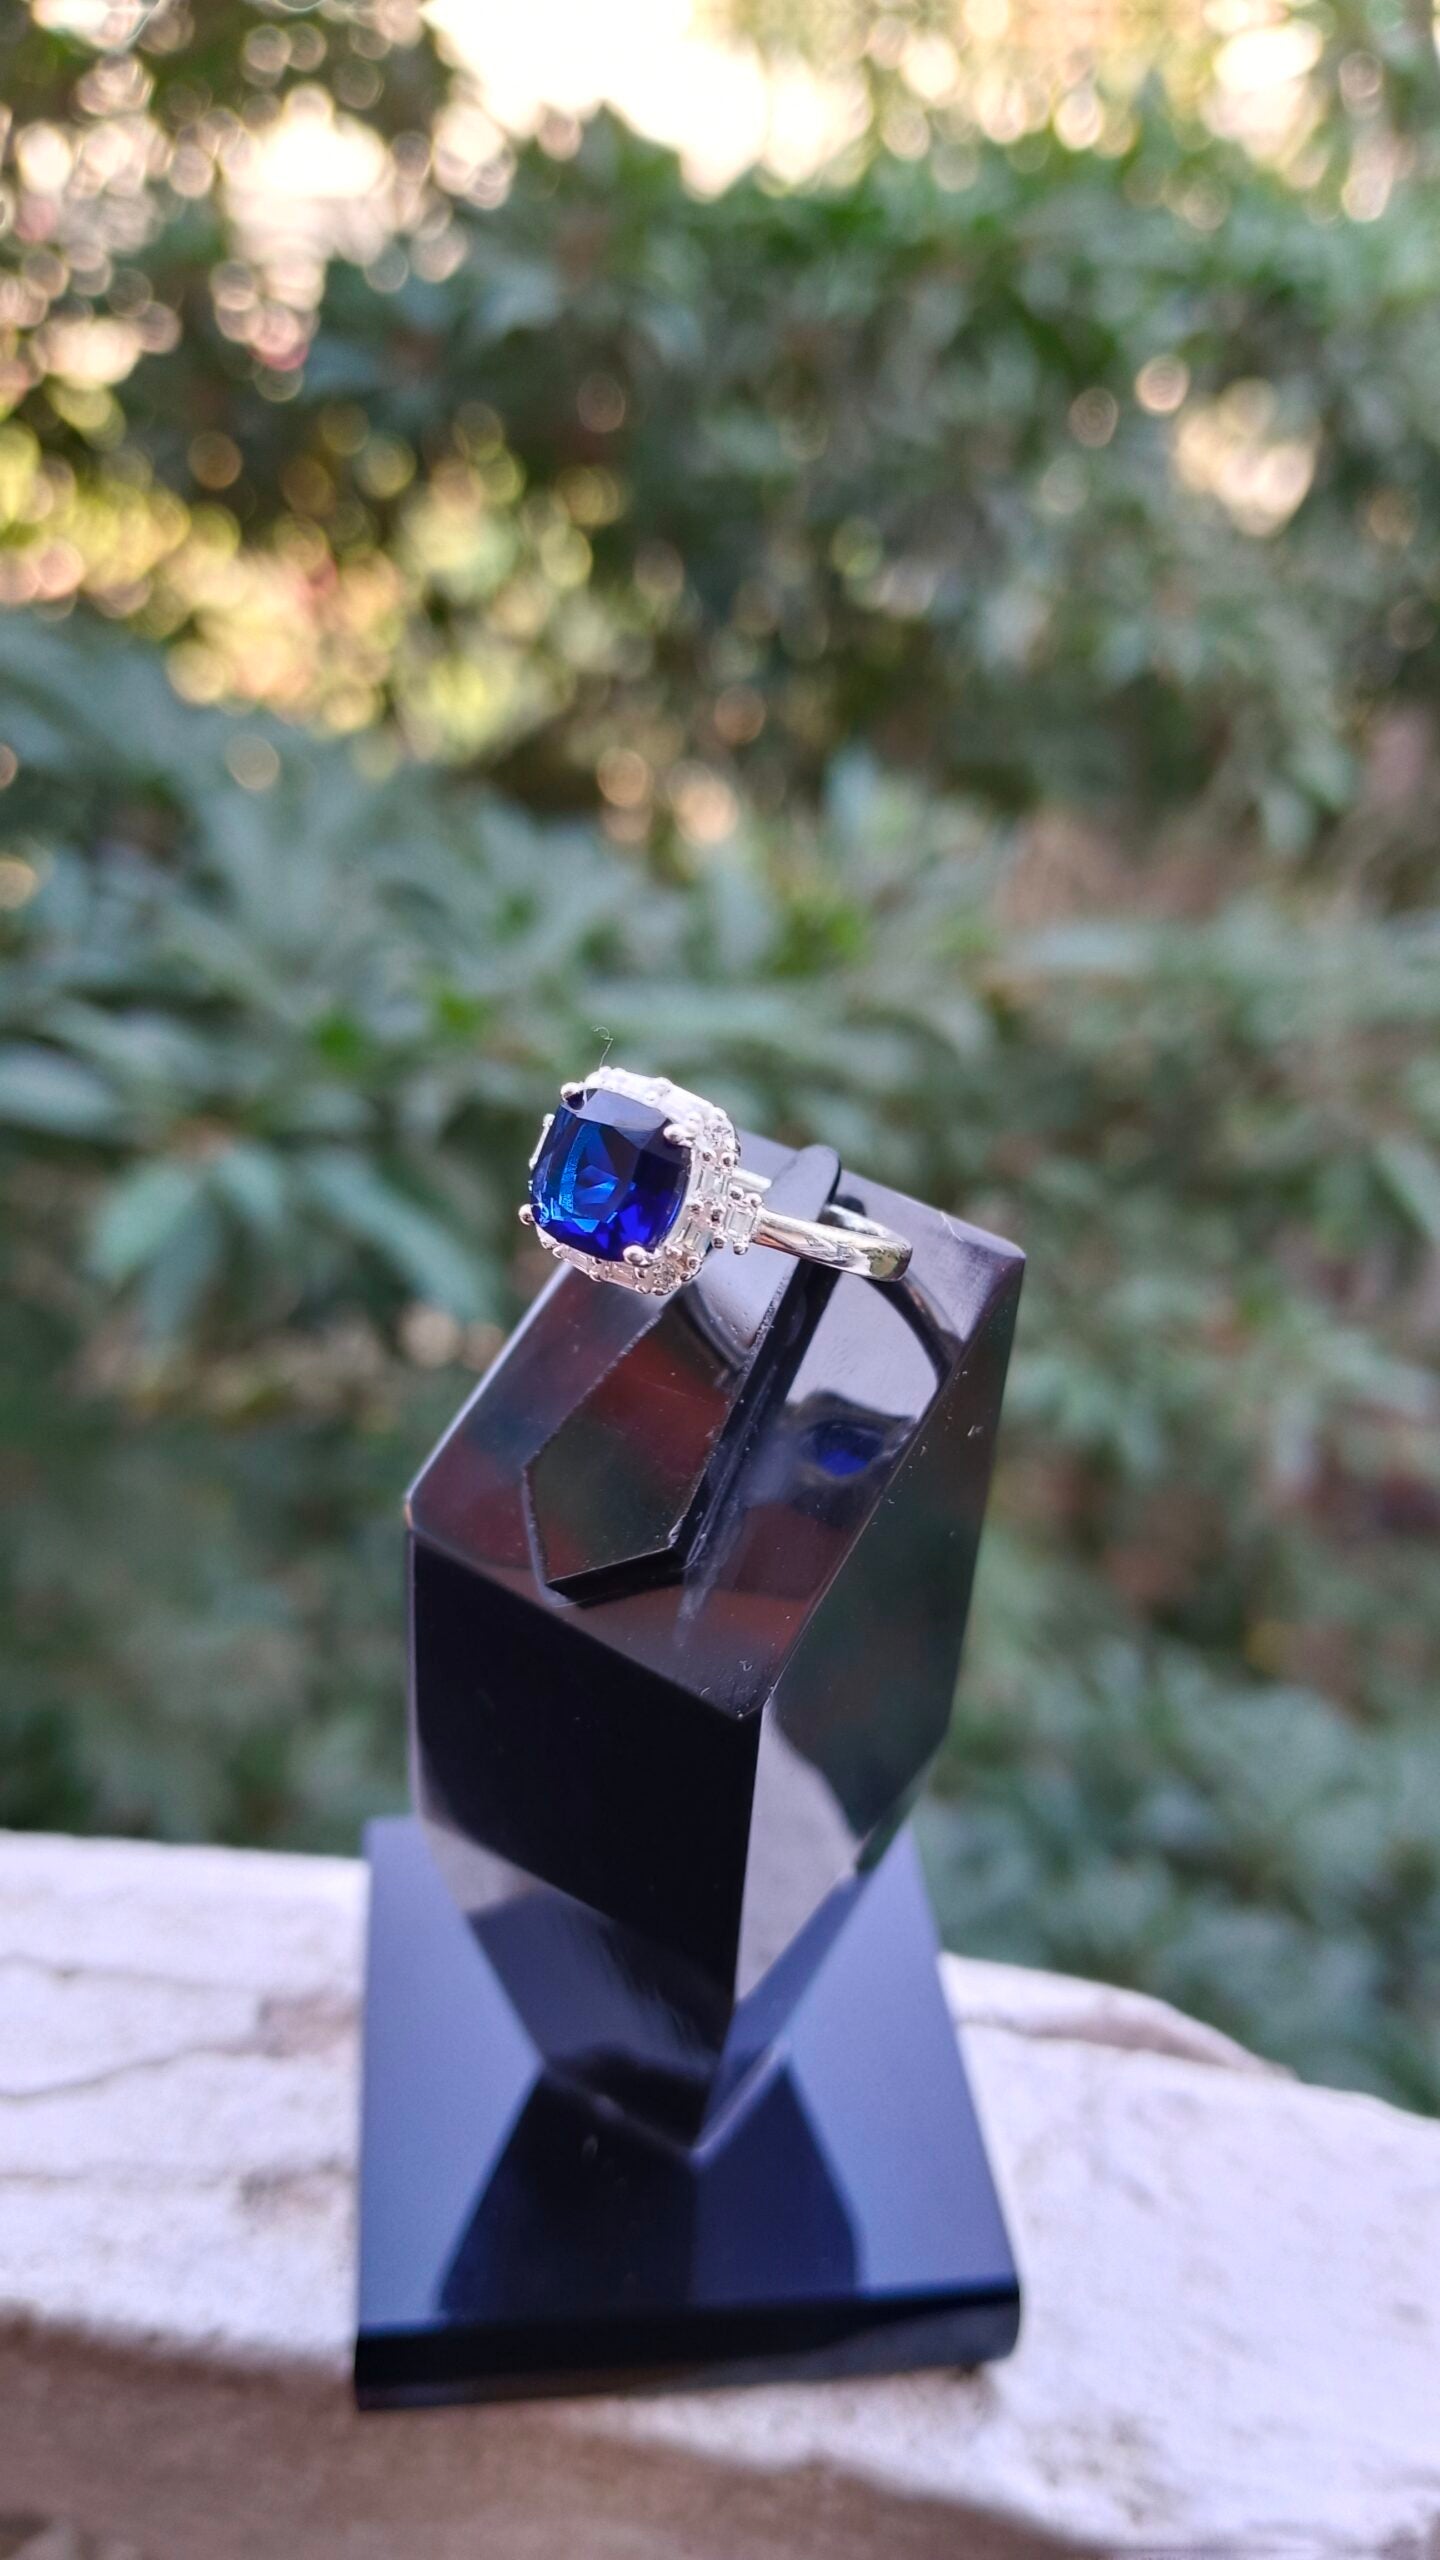 Blue Zircon Ladies Ring